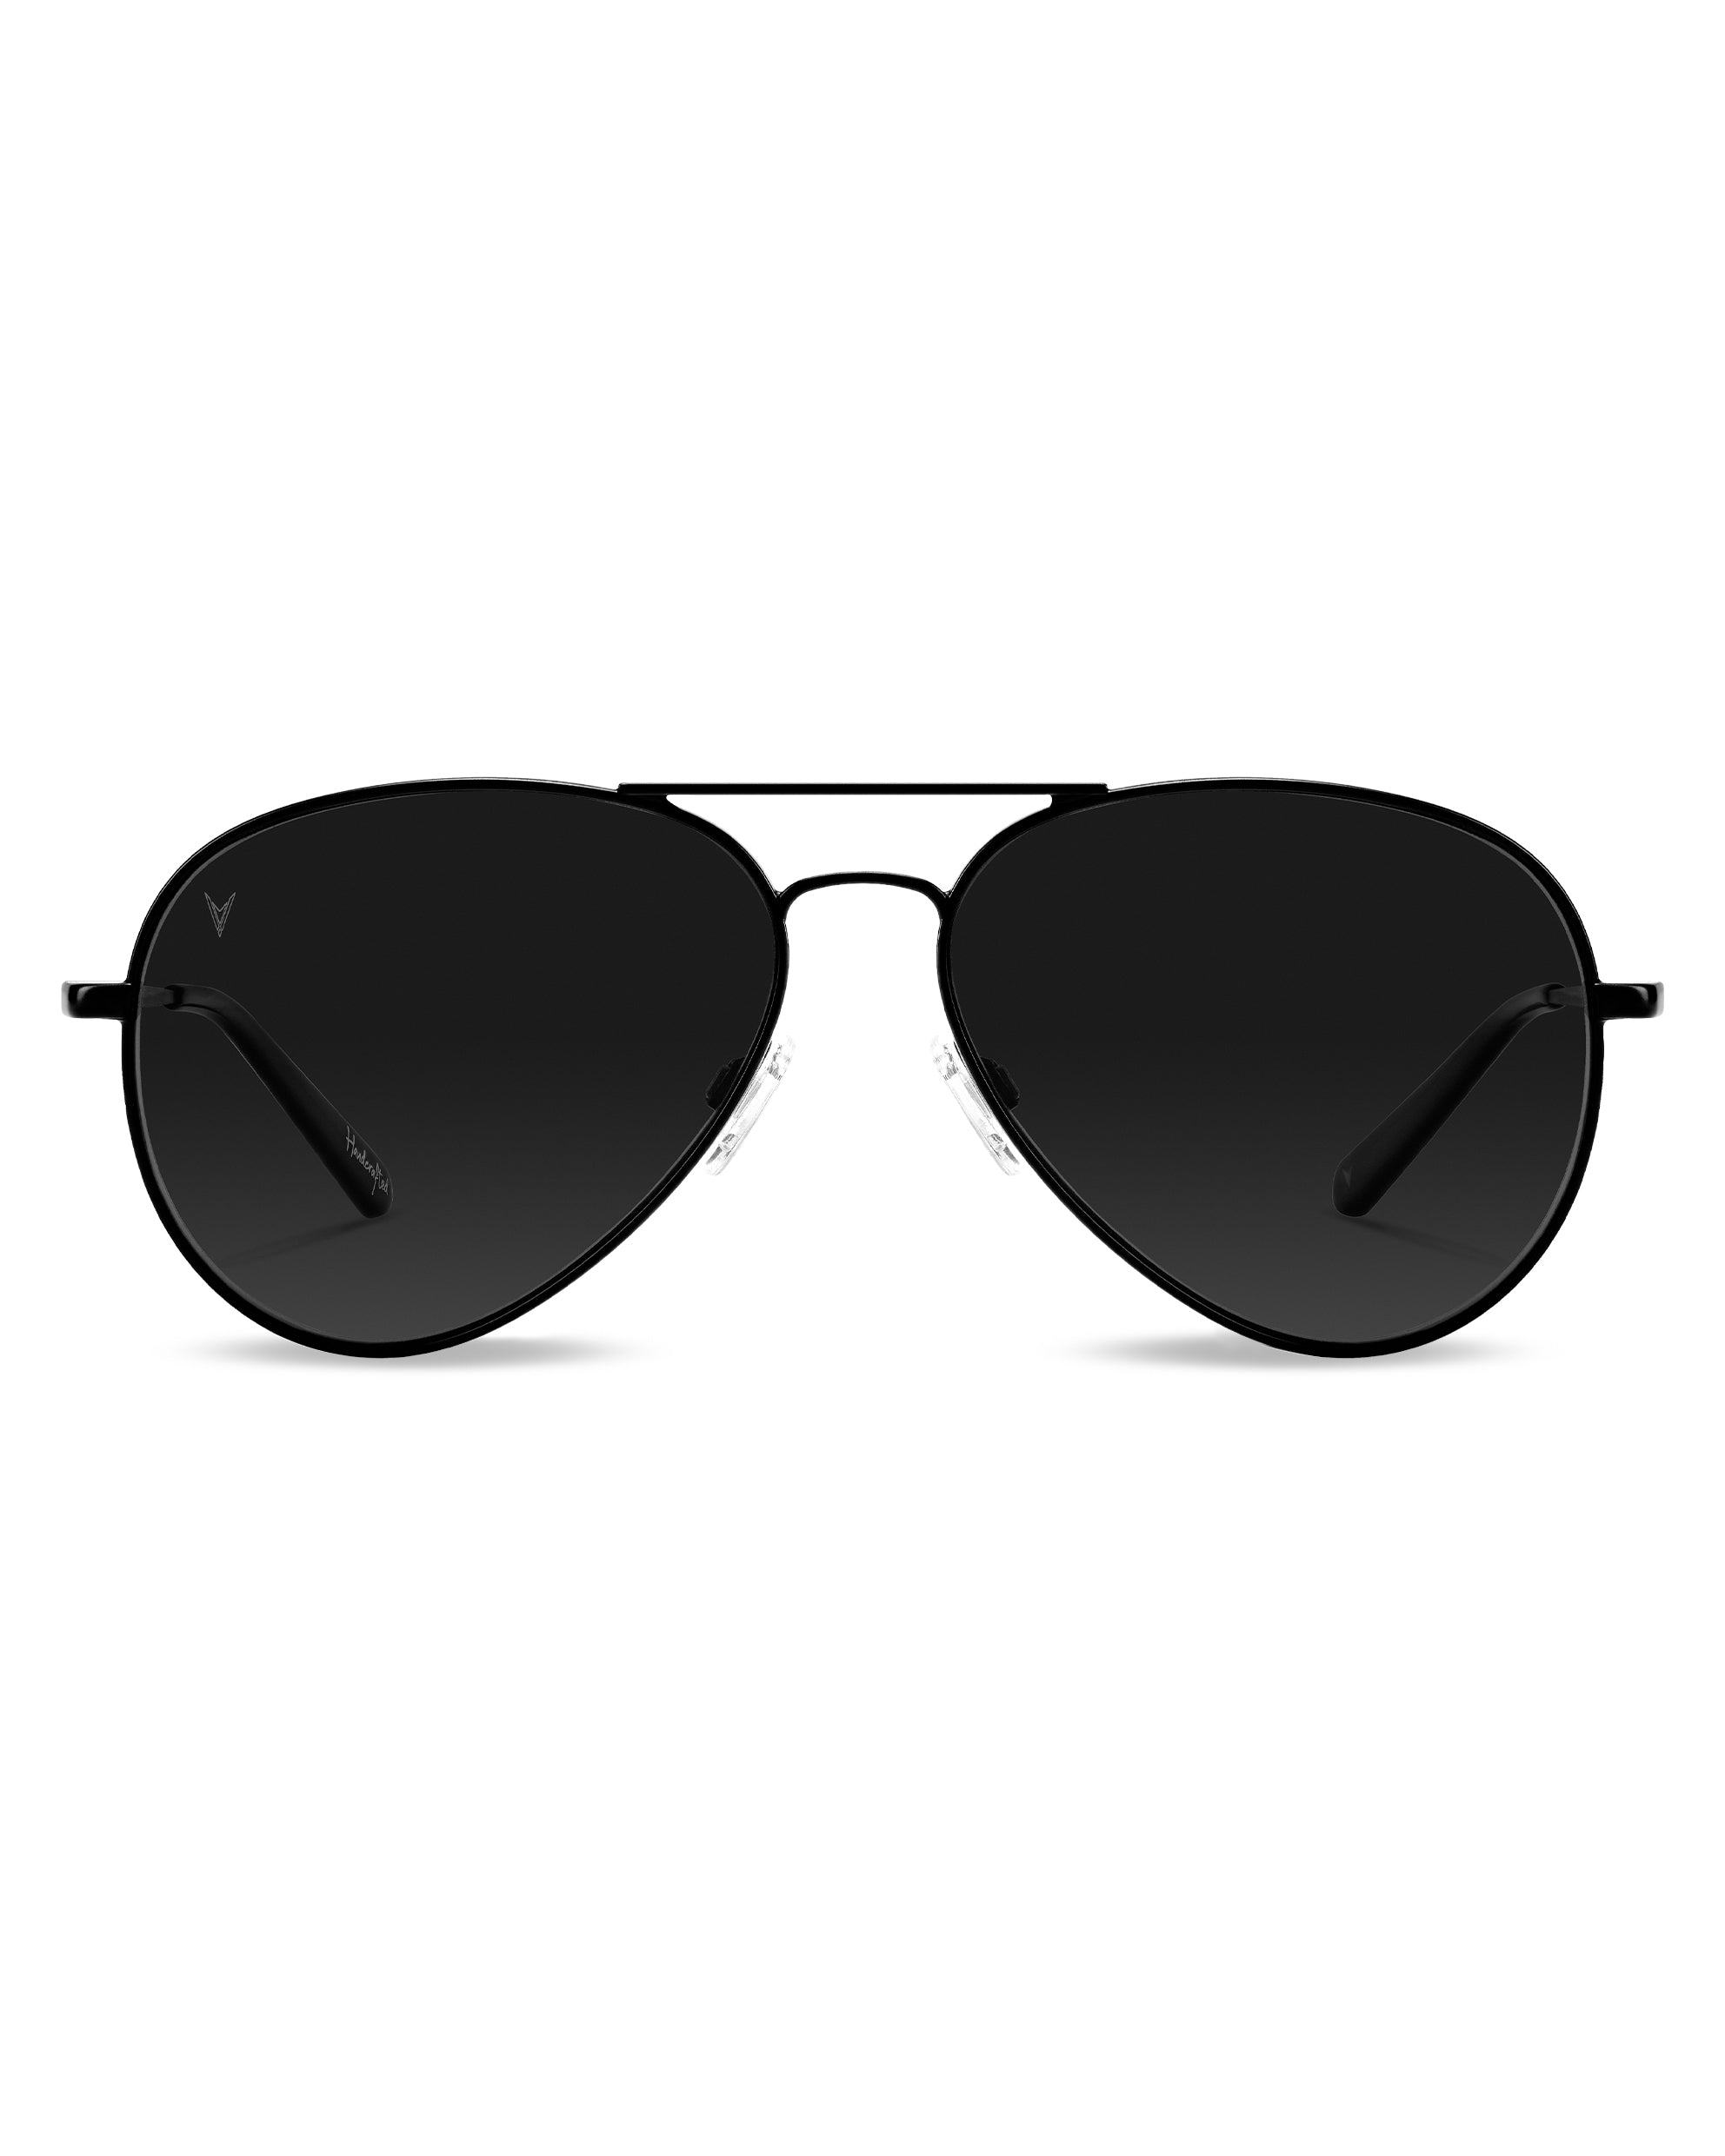 Buy BACK BOON Aviator Sunglasses Black For Men & Women Online @ Best Prices  in India | Flipkart.com